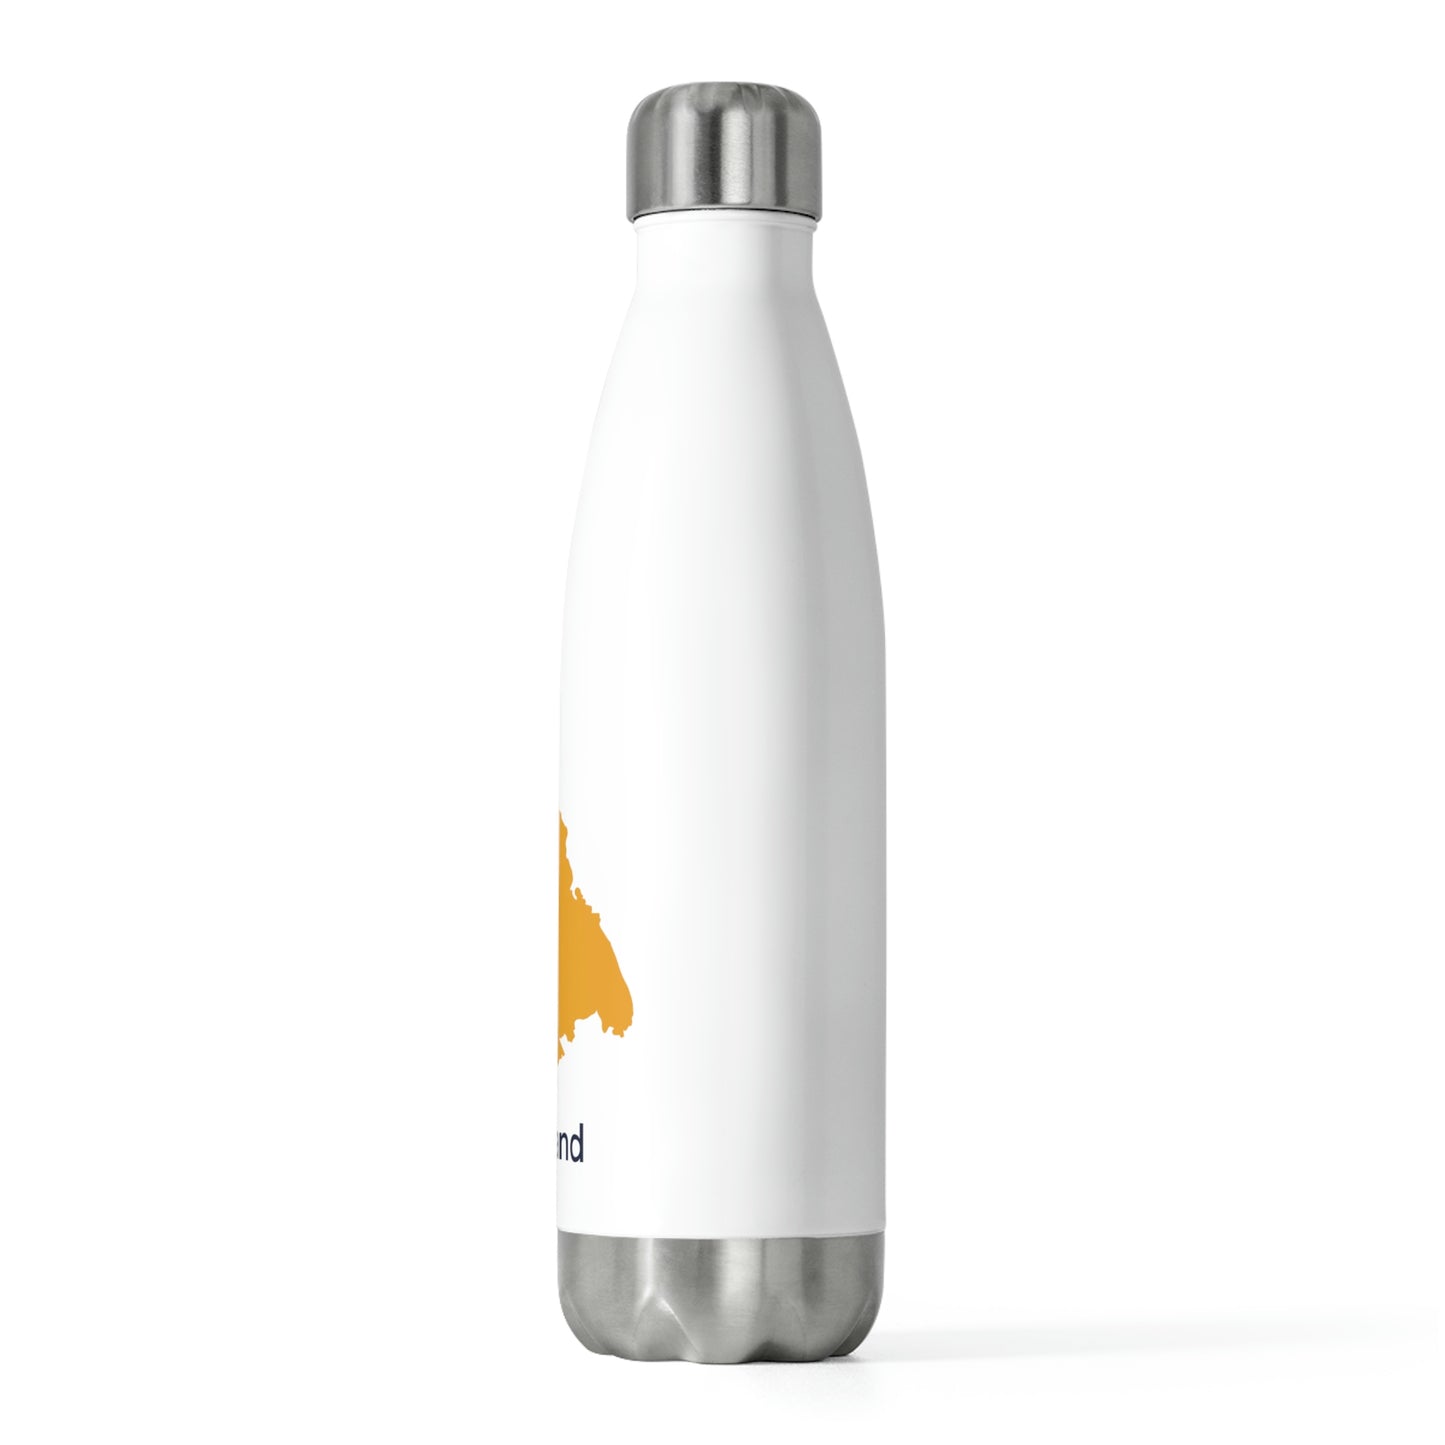 Oakland Orange 20oz Insulated Bottle